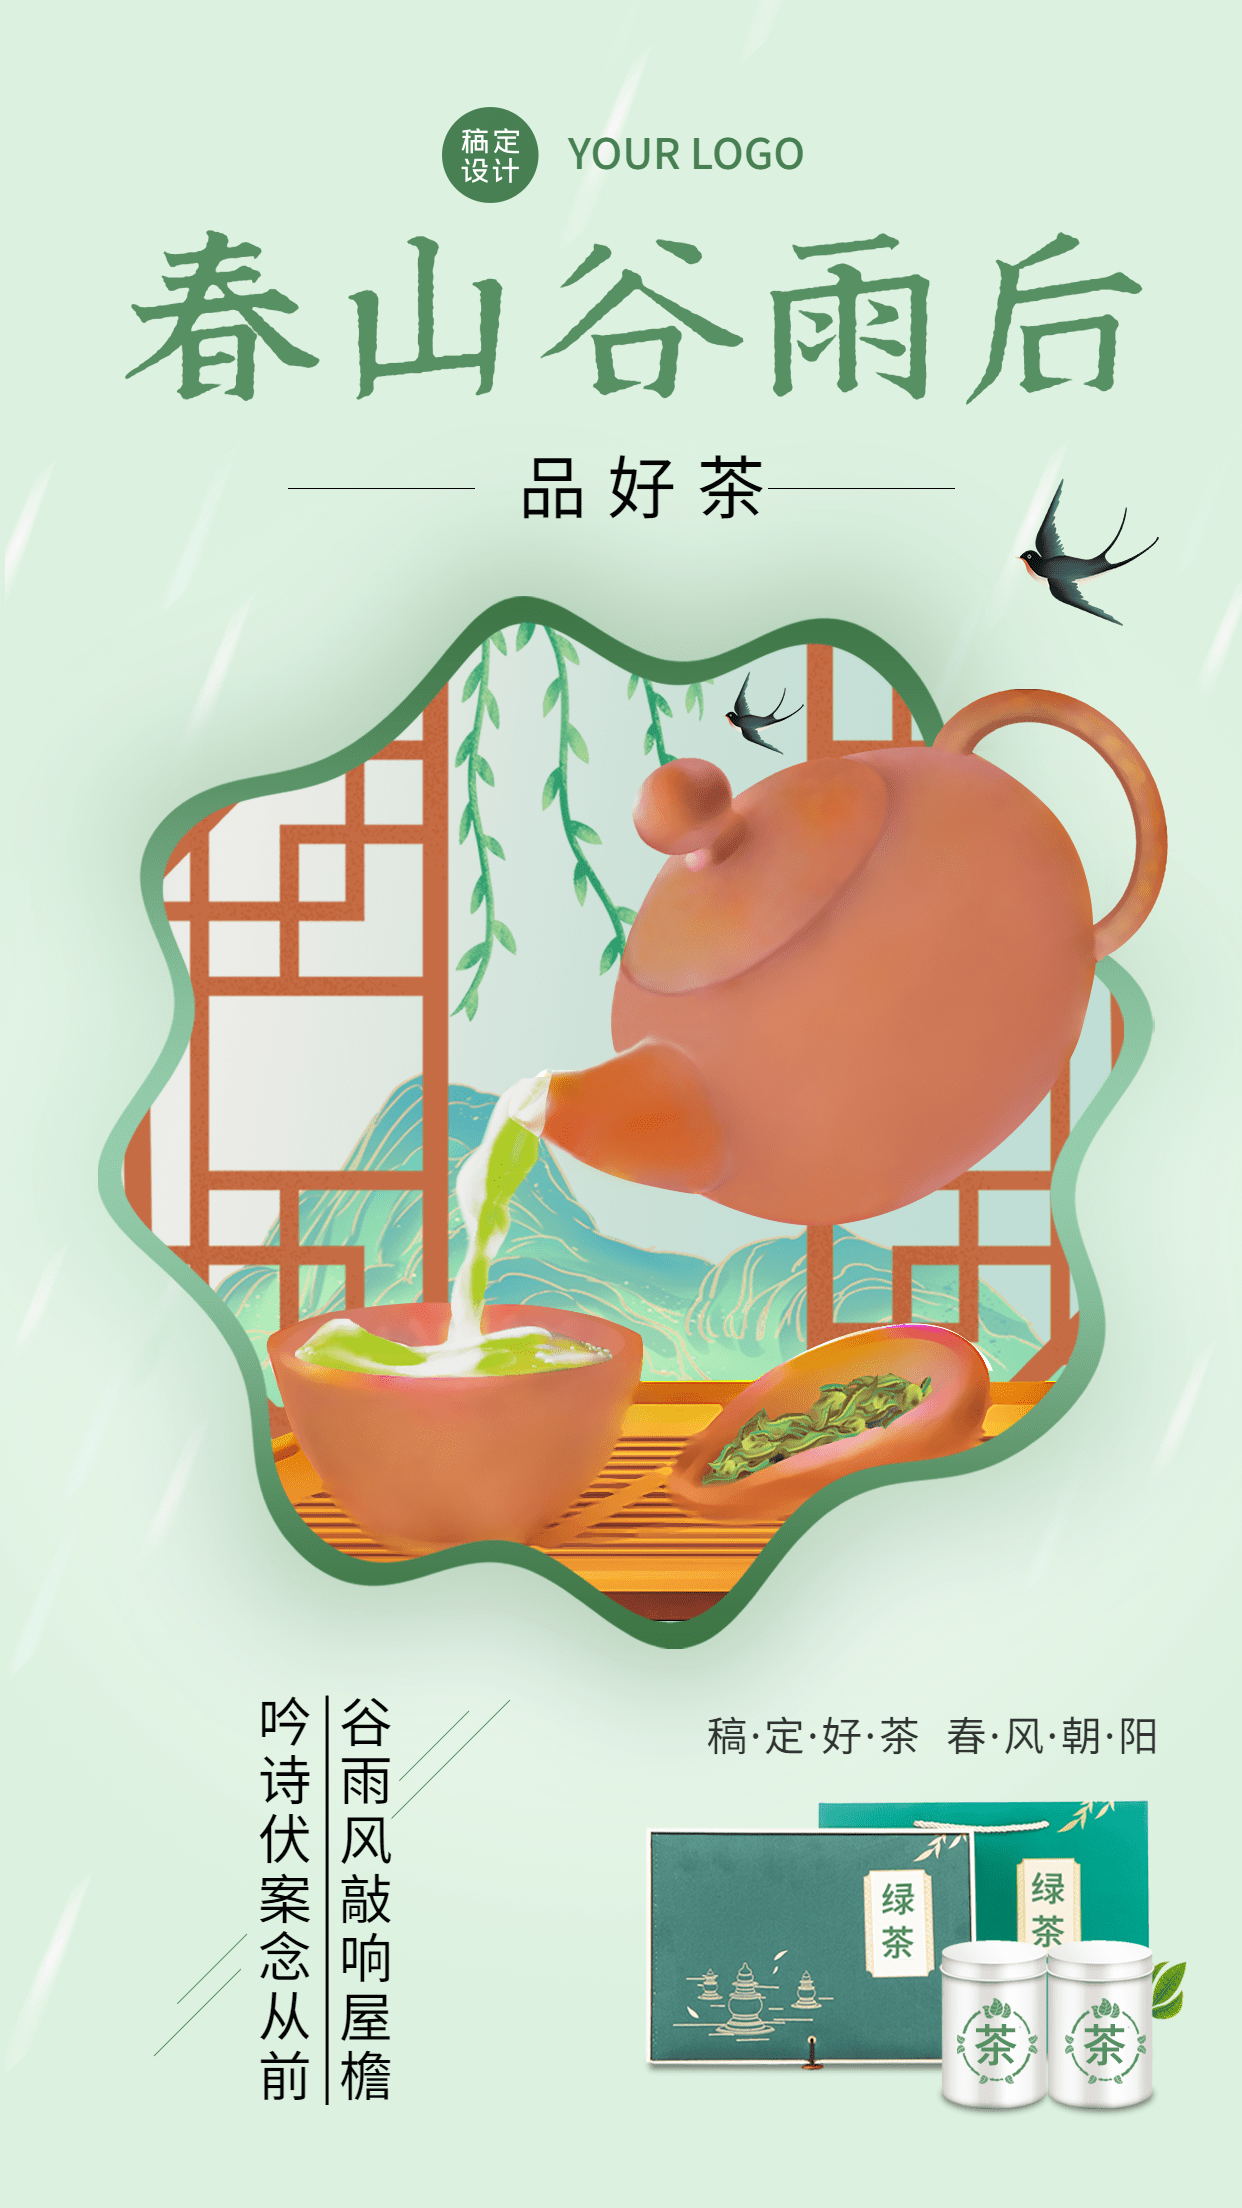 谷雨节气茶叶产品展示营销手机海报预览效果